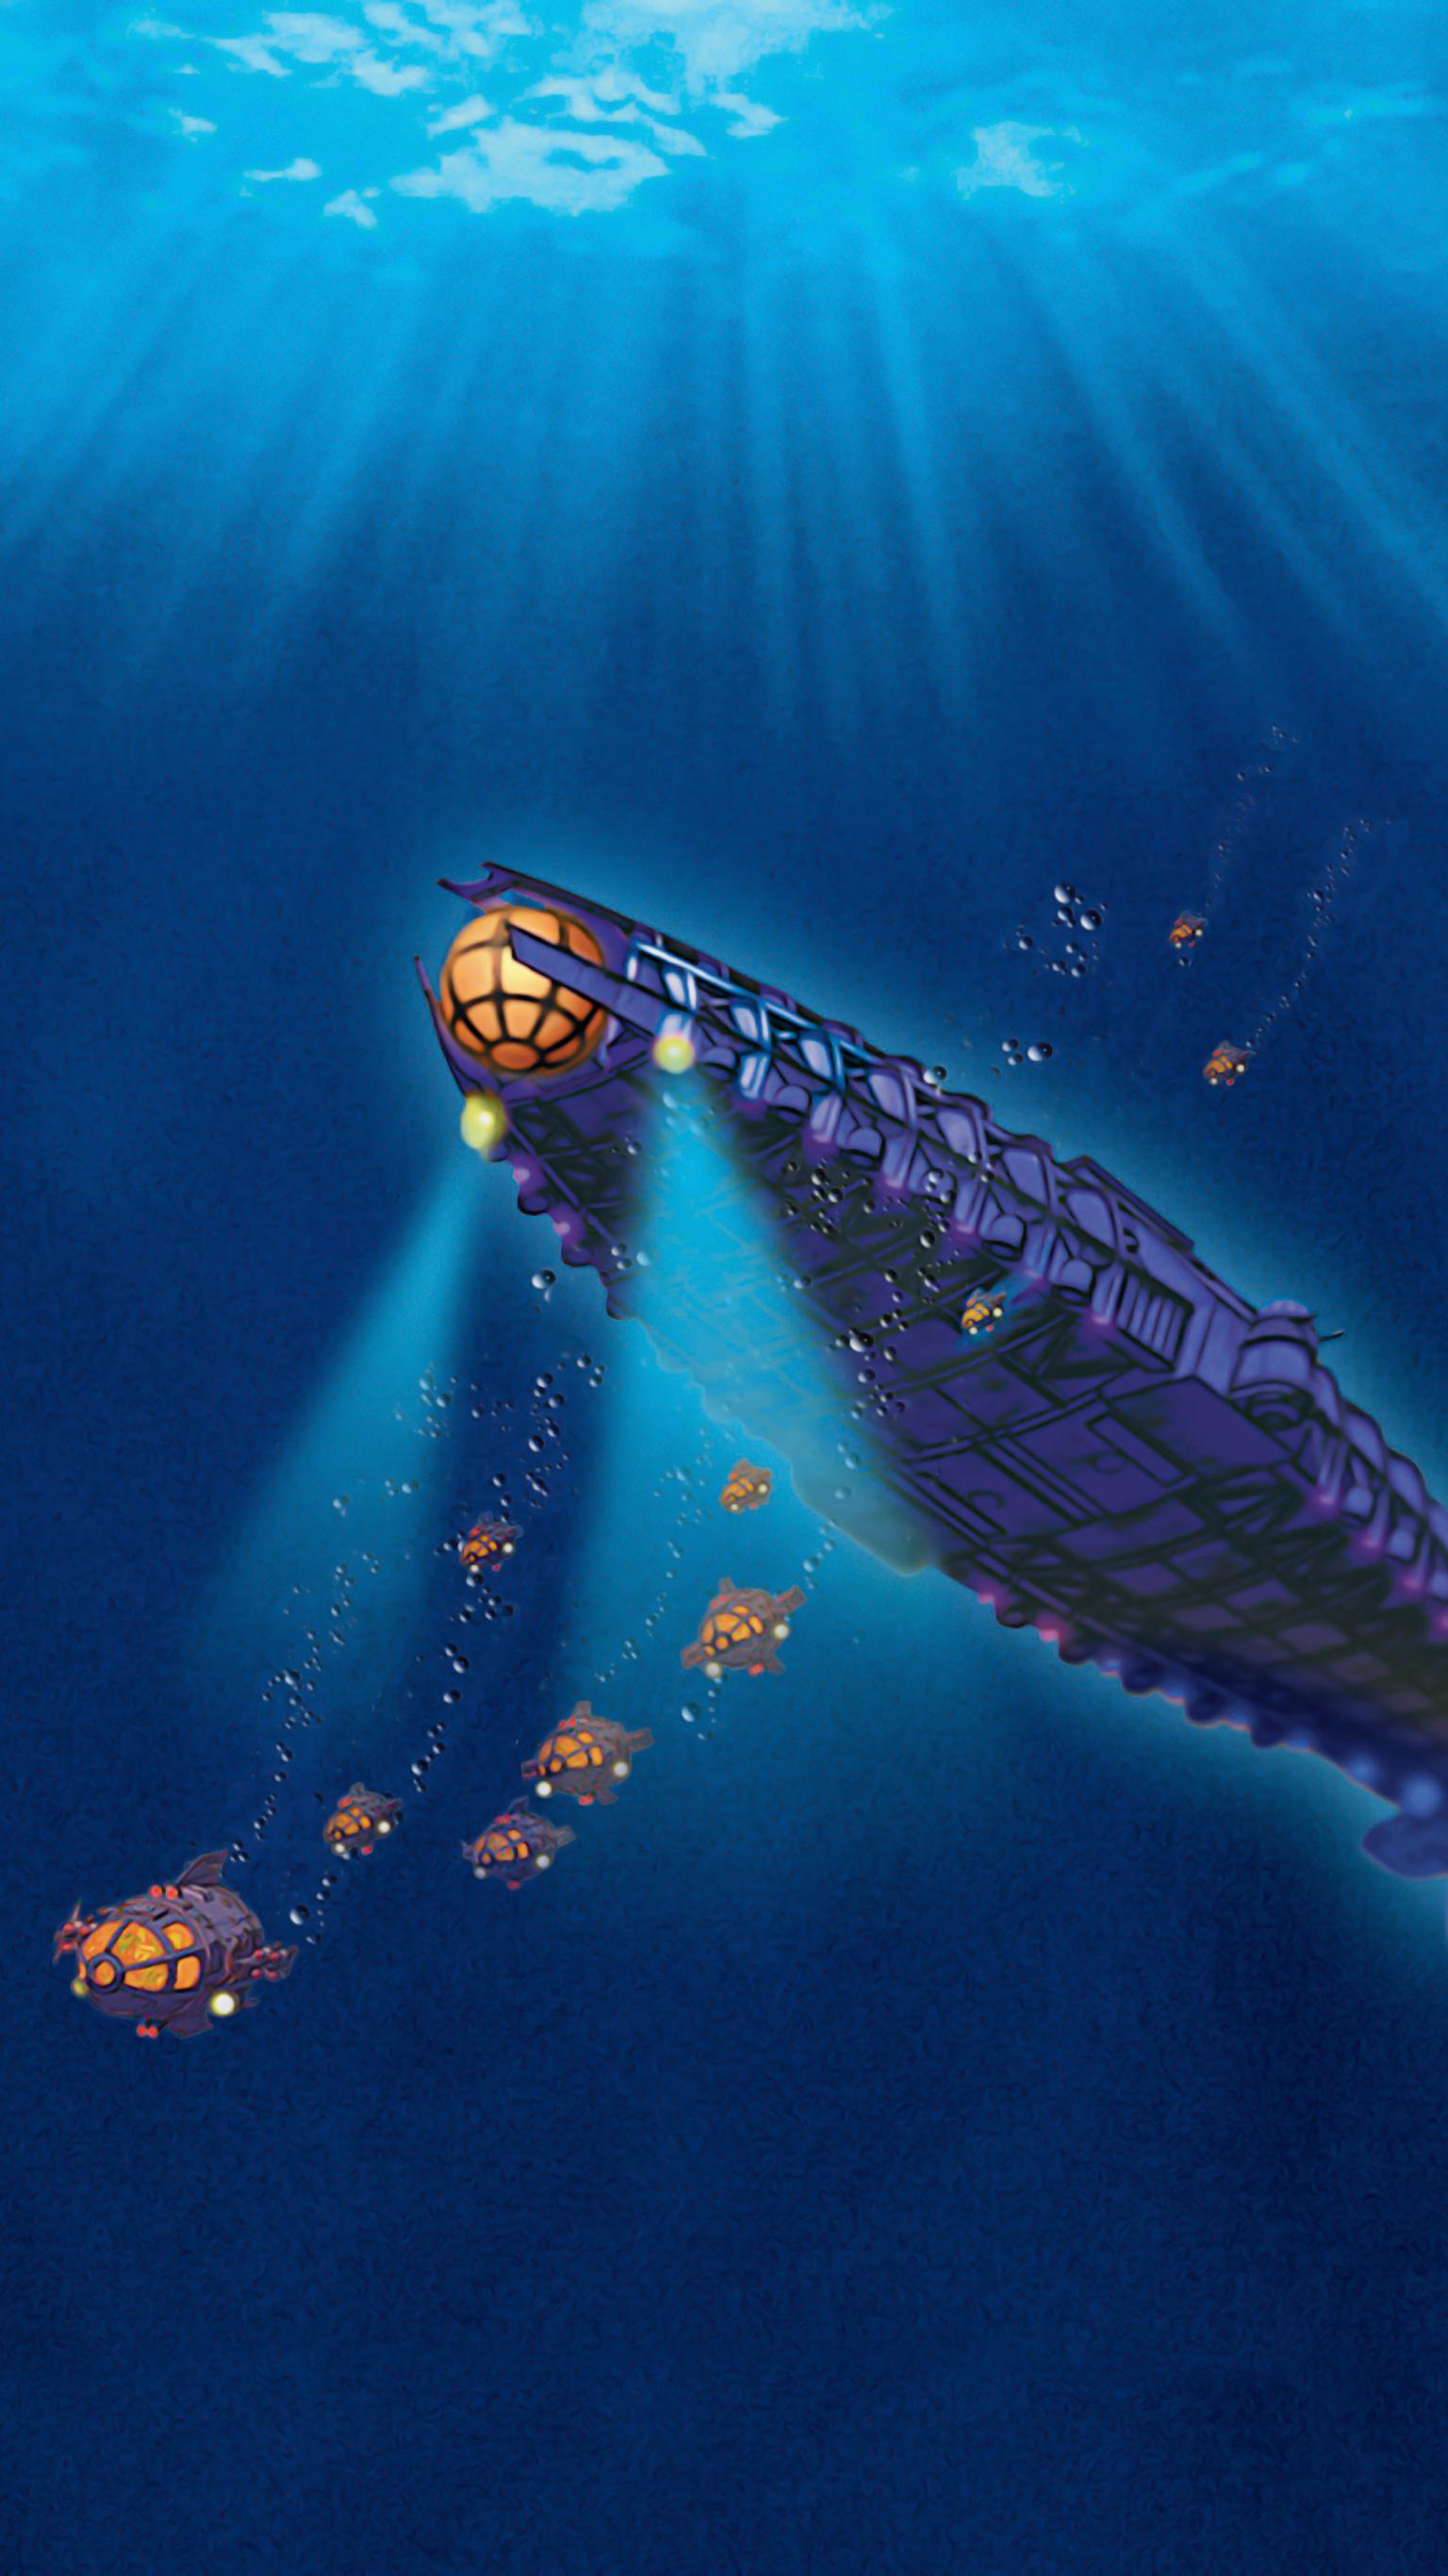 Stargate Atlantis Animated Wallpaper 1536x2732